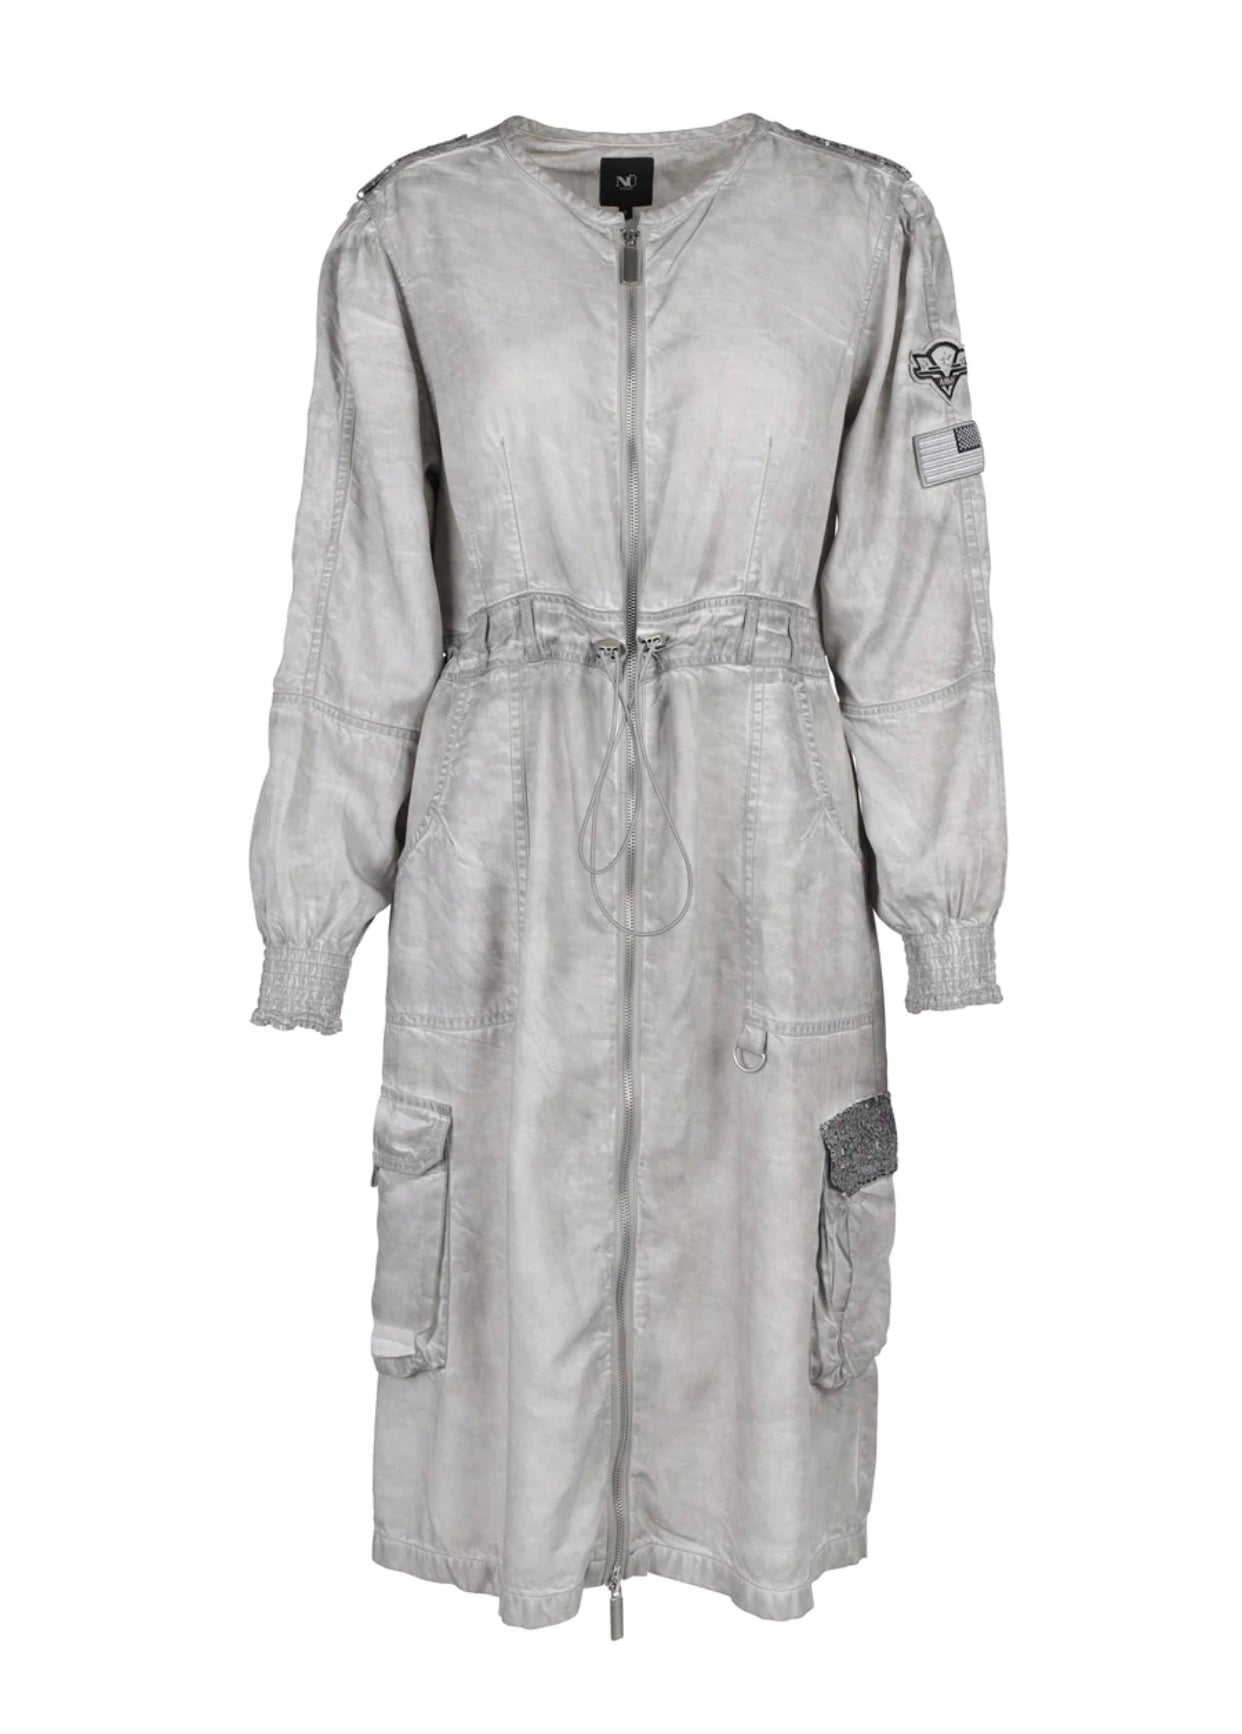 Long Sleeve Terra Dress in Kit